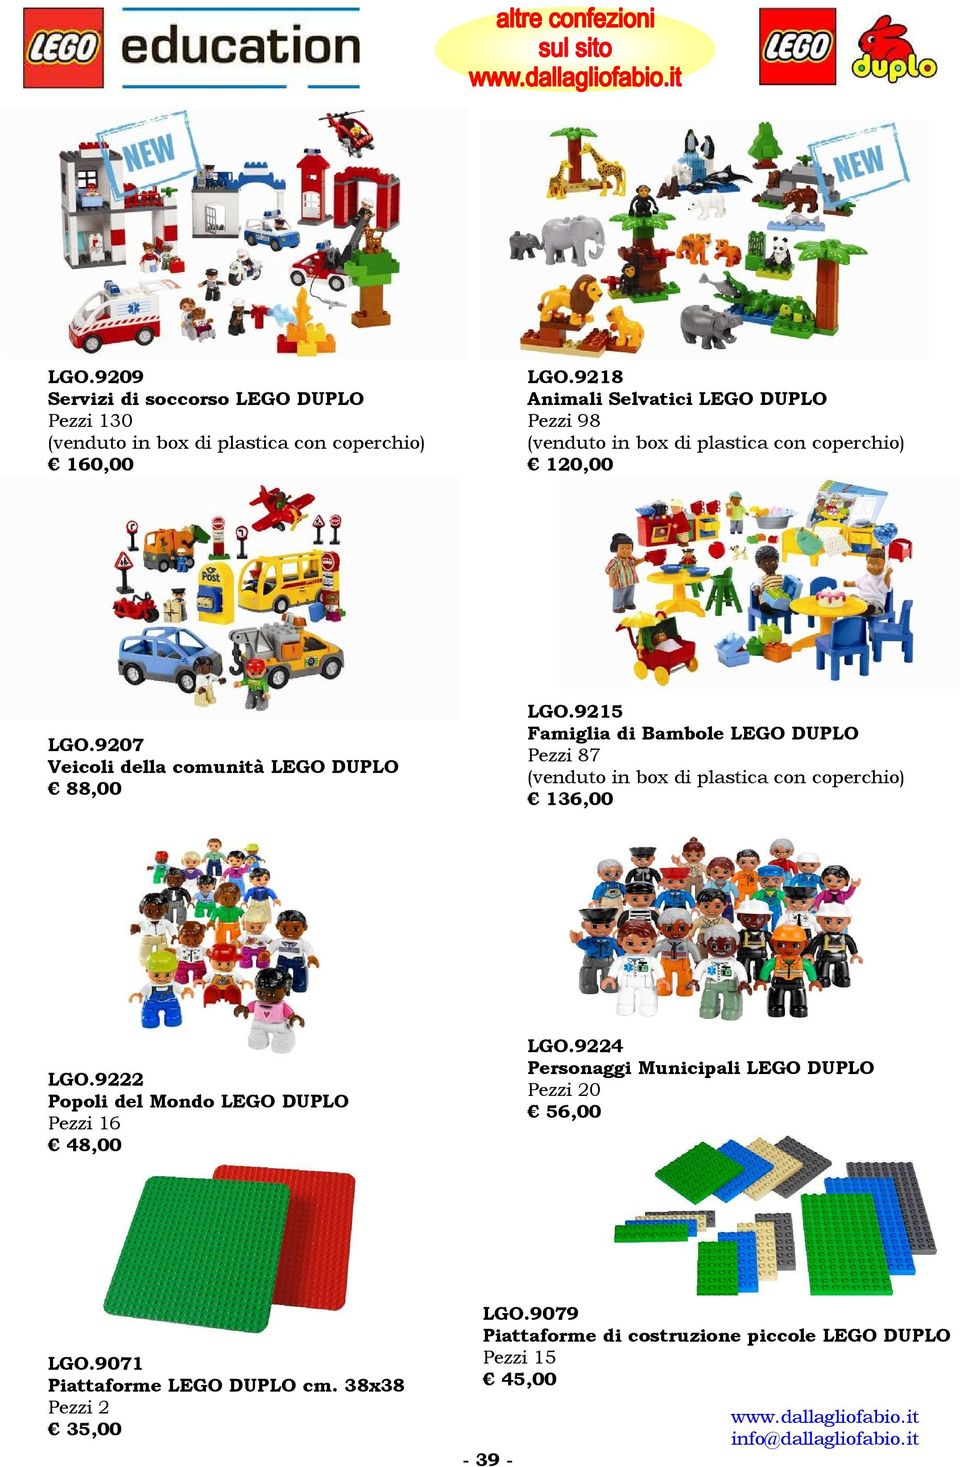 9215 Famiglia di Bambole LEGO DUPLO Pezzi 87 136,00 LGO.9222 Popoli del Mondo LEGO DUPLO Pezzi 16 48,00 LGO.